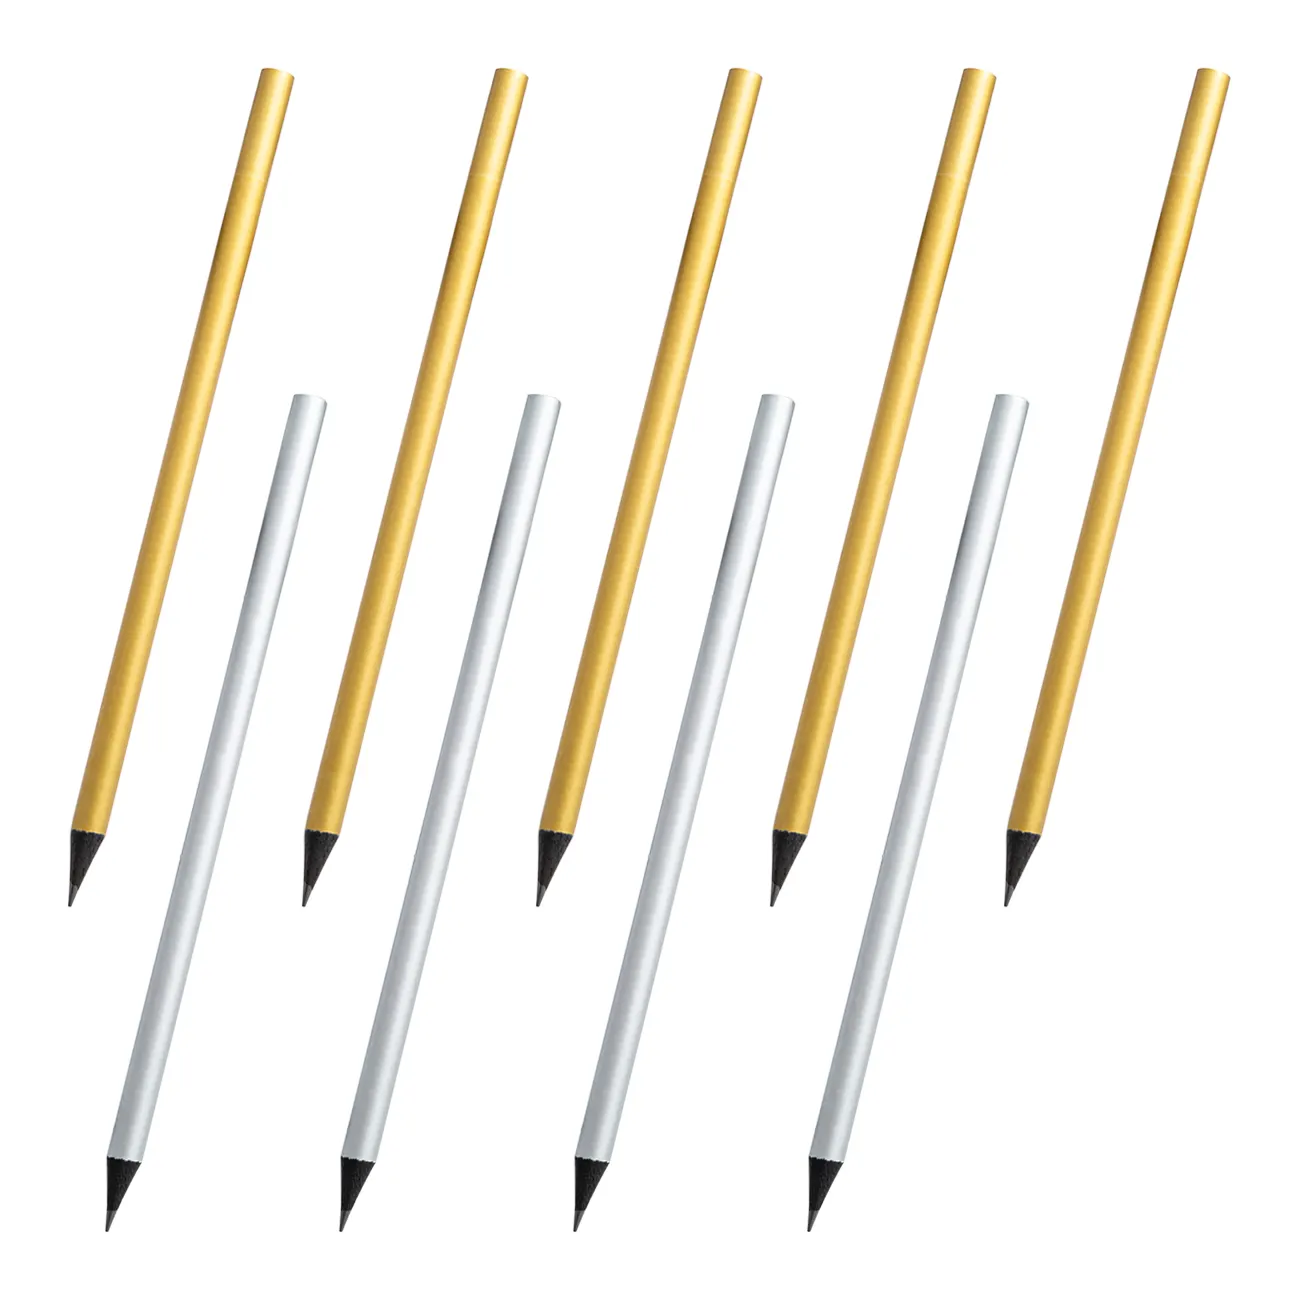 2020 çevre otel marka Logo baskılı kalem promosyon ucuz gümüş ve altın ahşap kalem